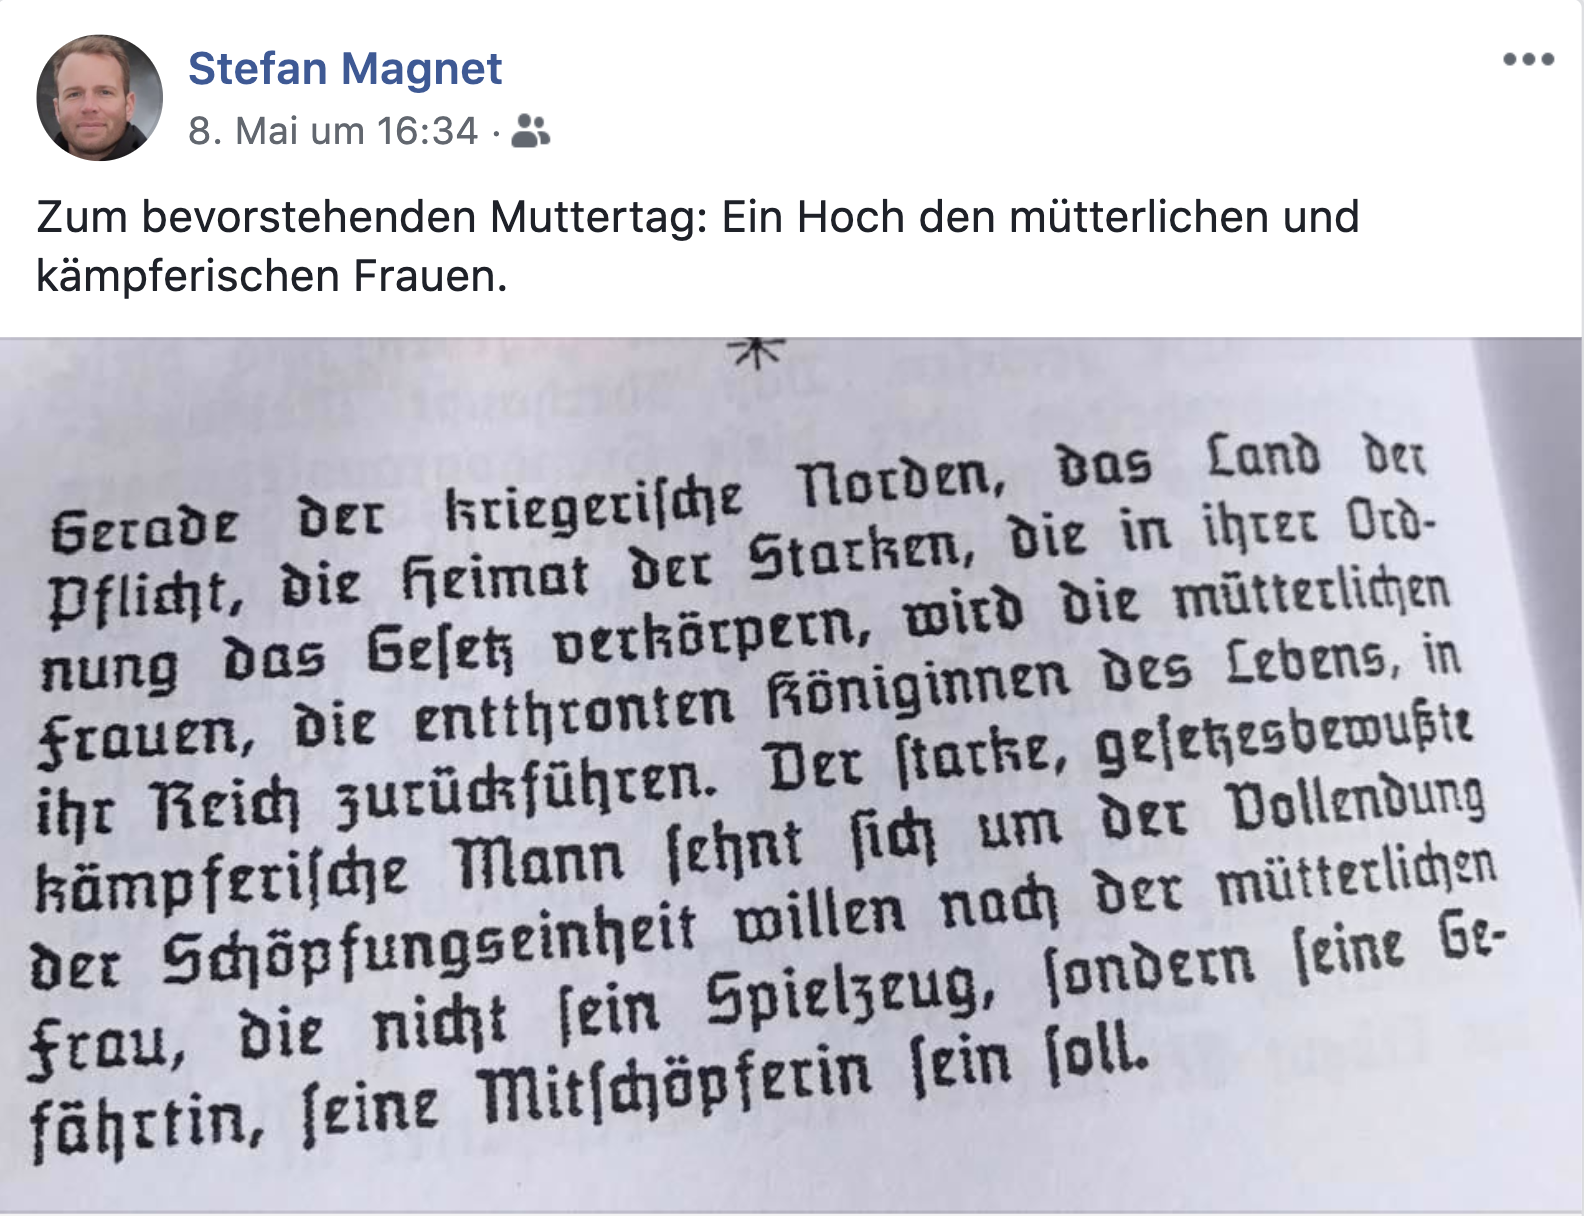 Magnet postet den Nazi-Schriftsteller Kurt Eggers